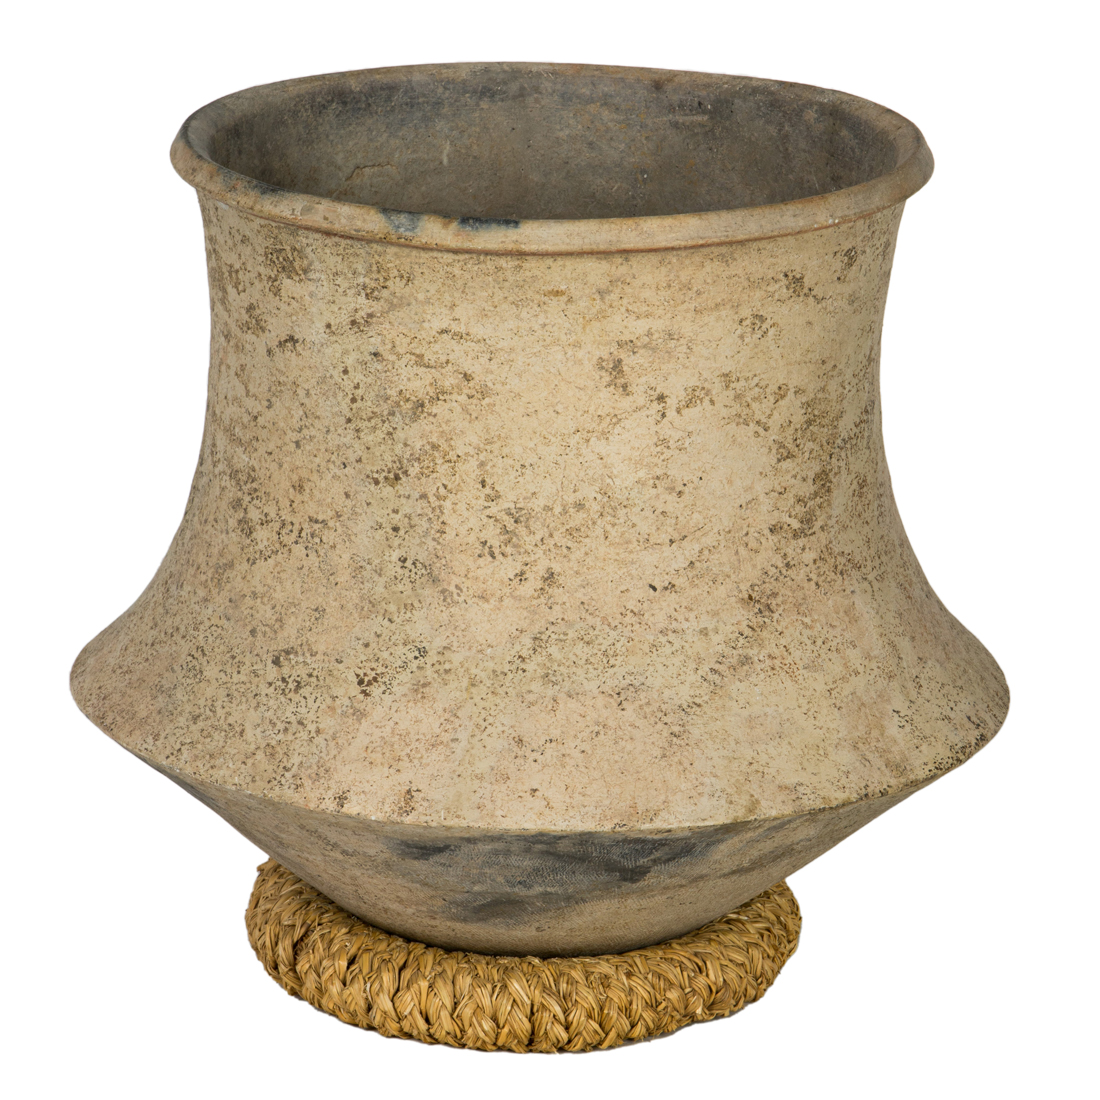 LARGE CLAY POT Large clay pot,